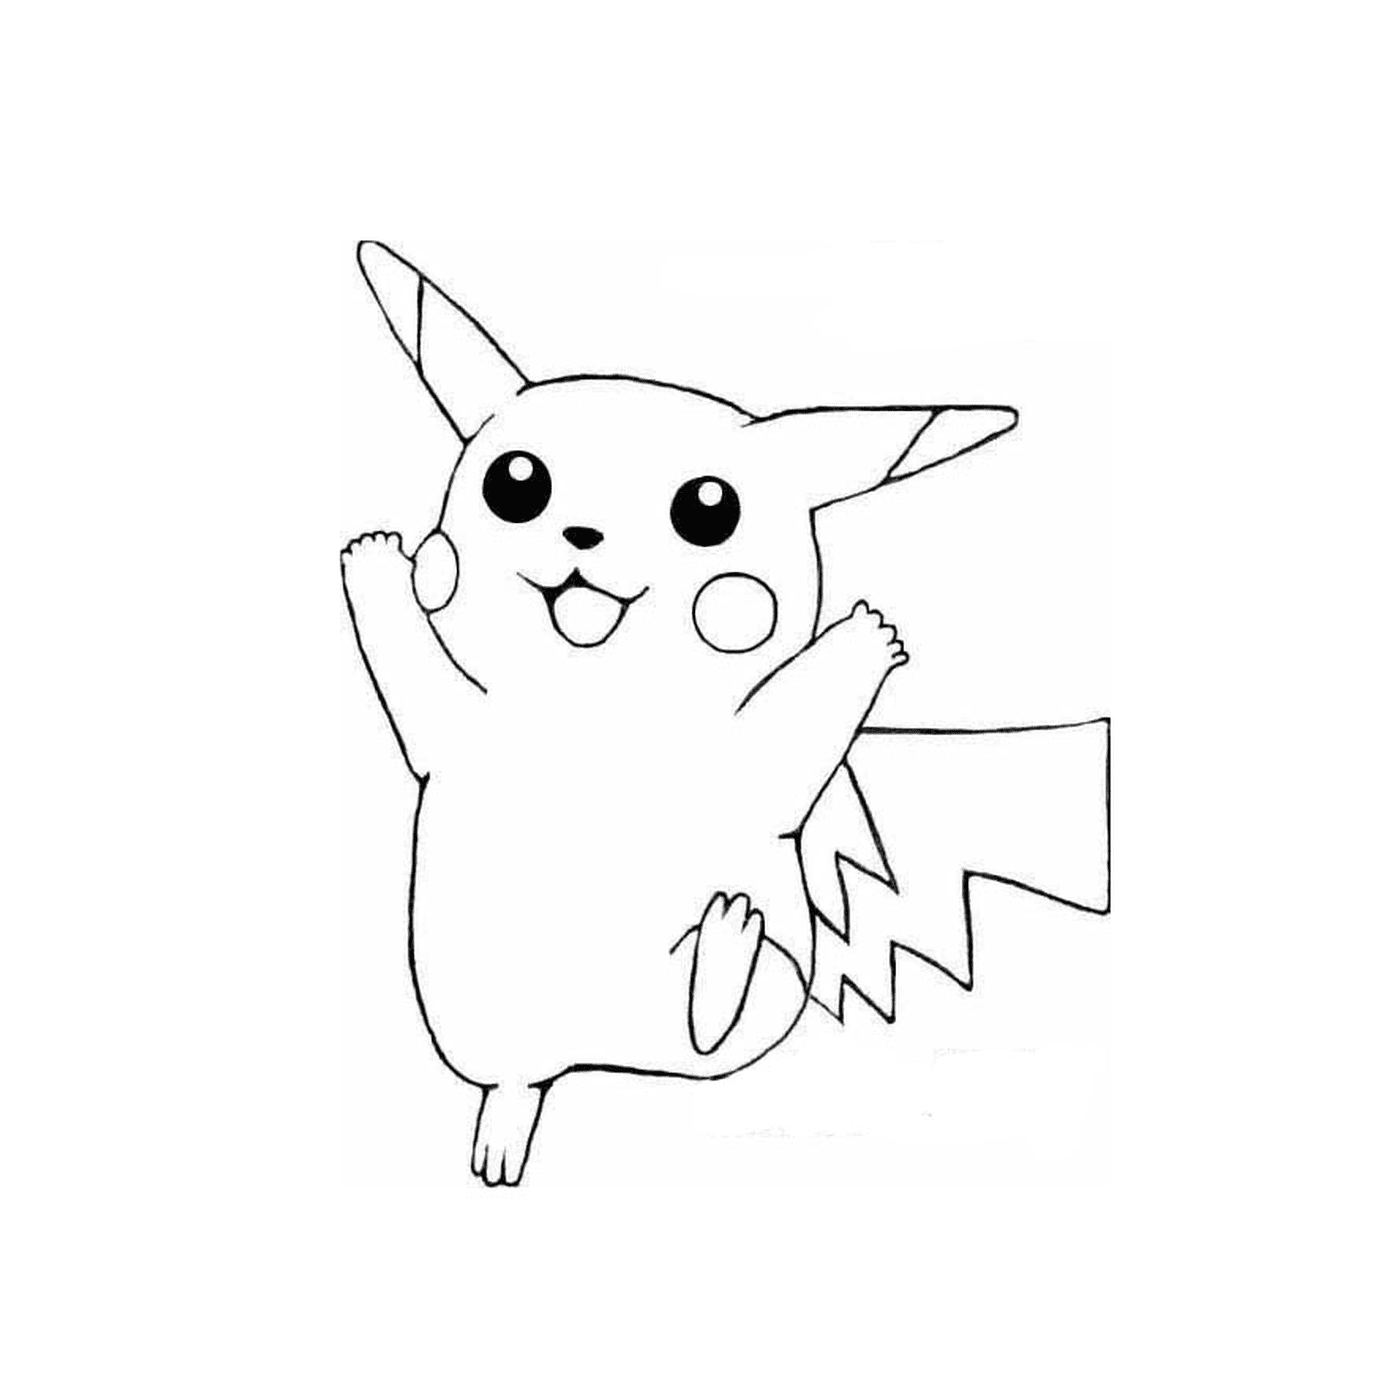  Pikachu em versão fácil de desenhar 